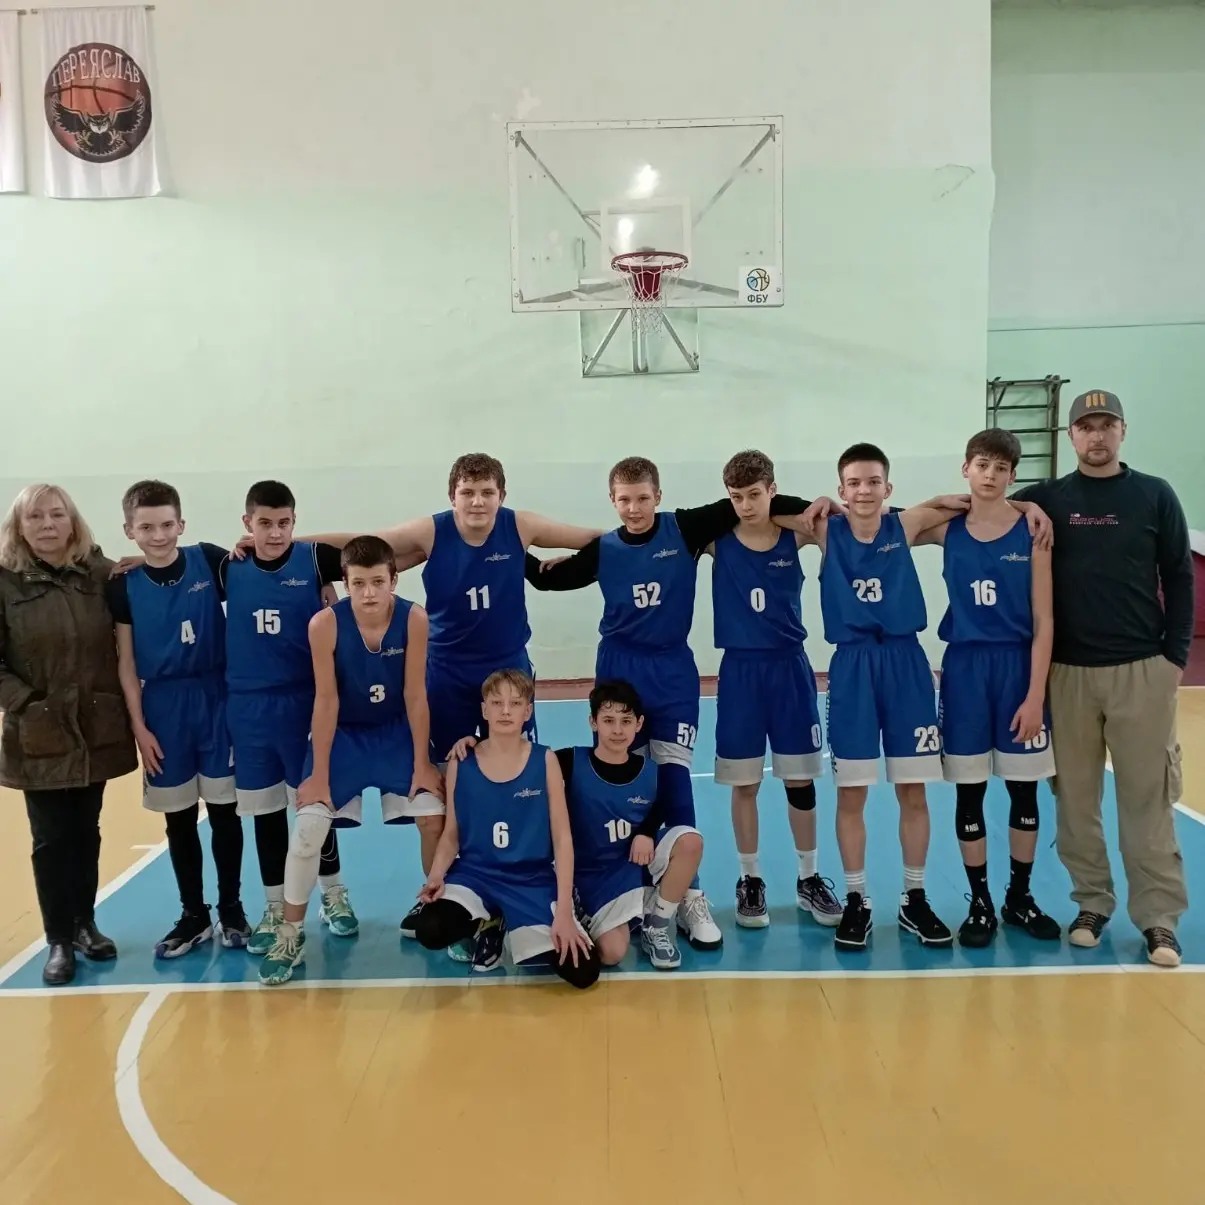 Баскетболістки з Переяславської ДЮСШ здолали суперниць на відкритому чемпіонаті Київської області